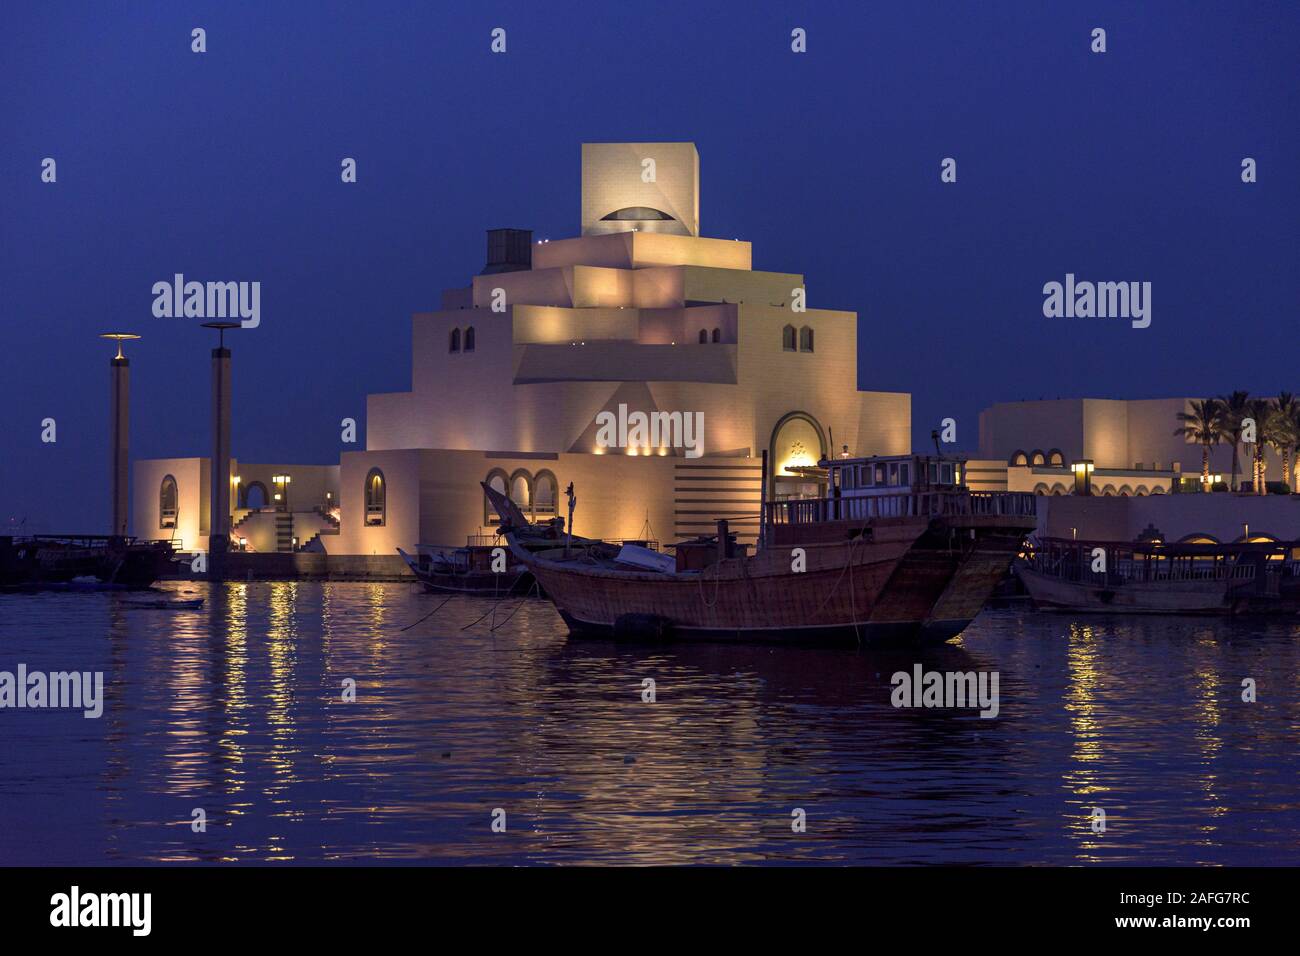 Night view of the Museum of Islamic Art, Doha, Qatar Stock Photo